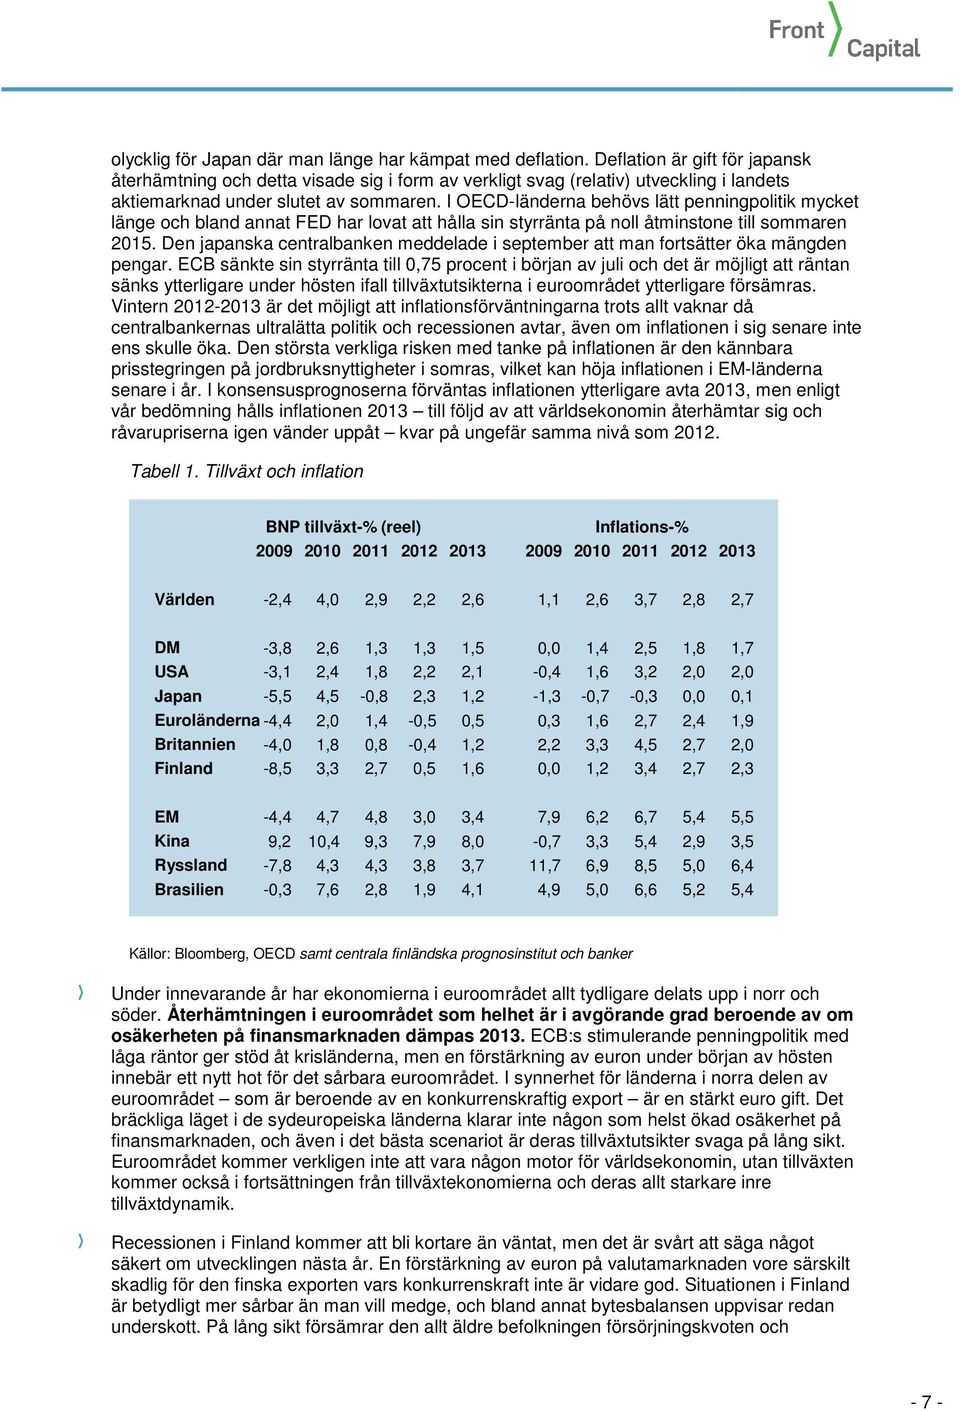 I OECD-länderna behövs lätt penningpolitik mycket länge och bland annat FED har lovat att hålla sin styrränta på noll åtminstone till sommaren 2015.